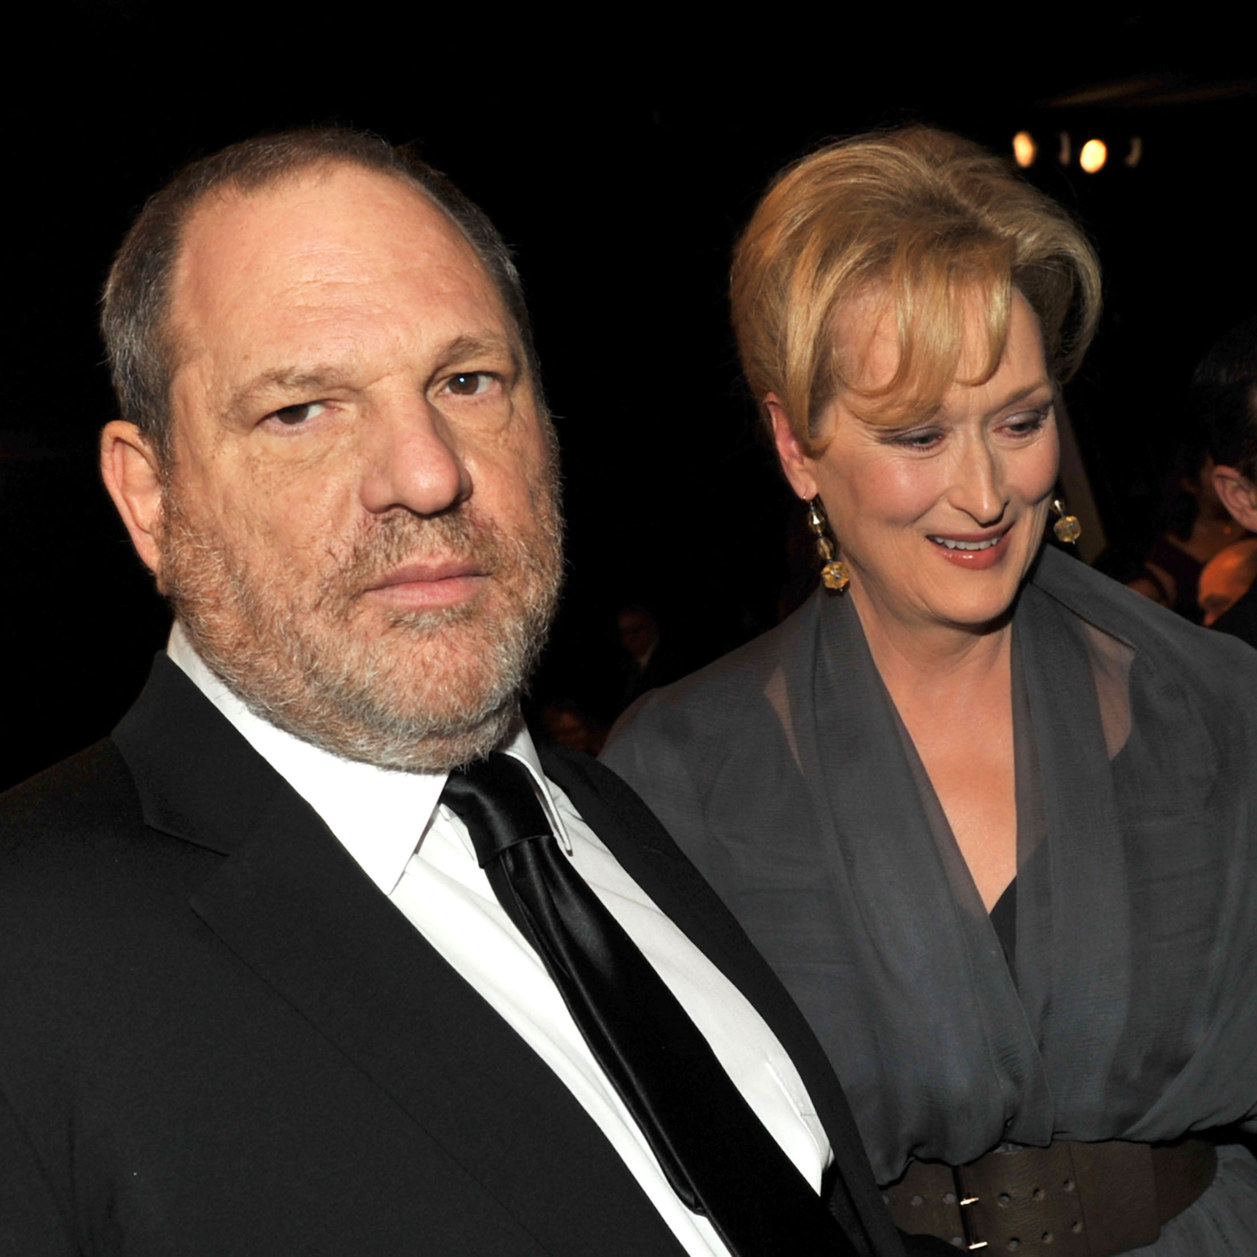 La bande-annonce du documentaire sur Harvey Weinstein fait froid dans le dos